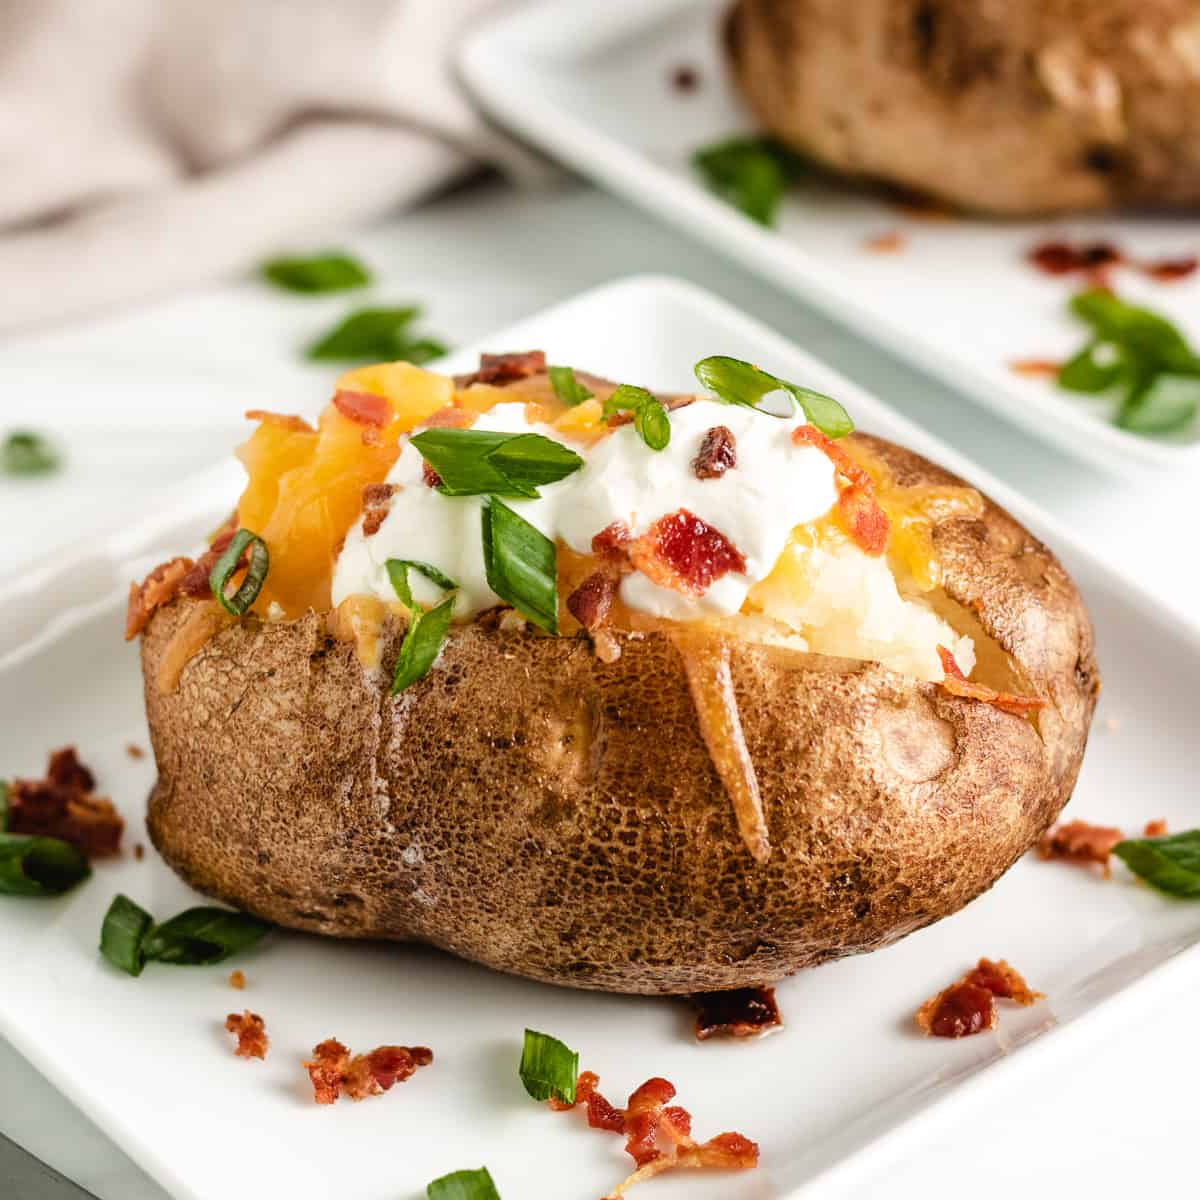 https://www.berlyskitchen.com/wp-content/uploads/2021/09/Crock-Pot-Baked-Potatoes-Featured-Image.jpg